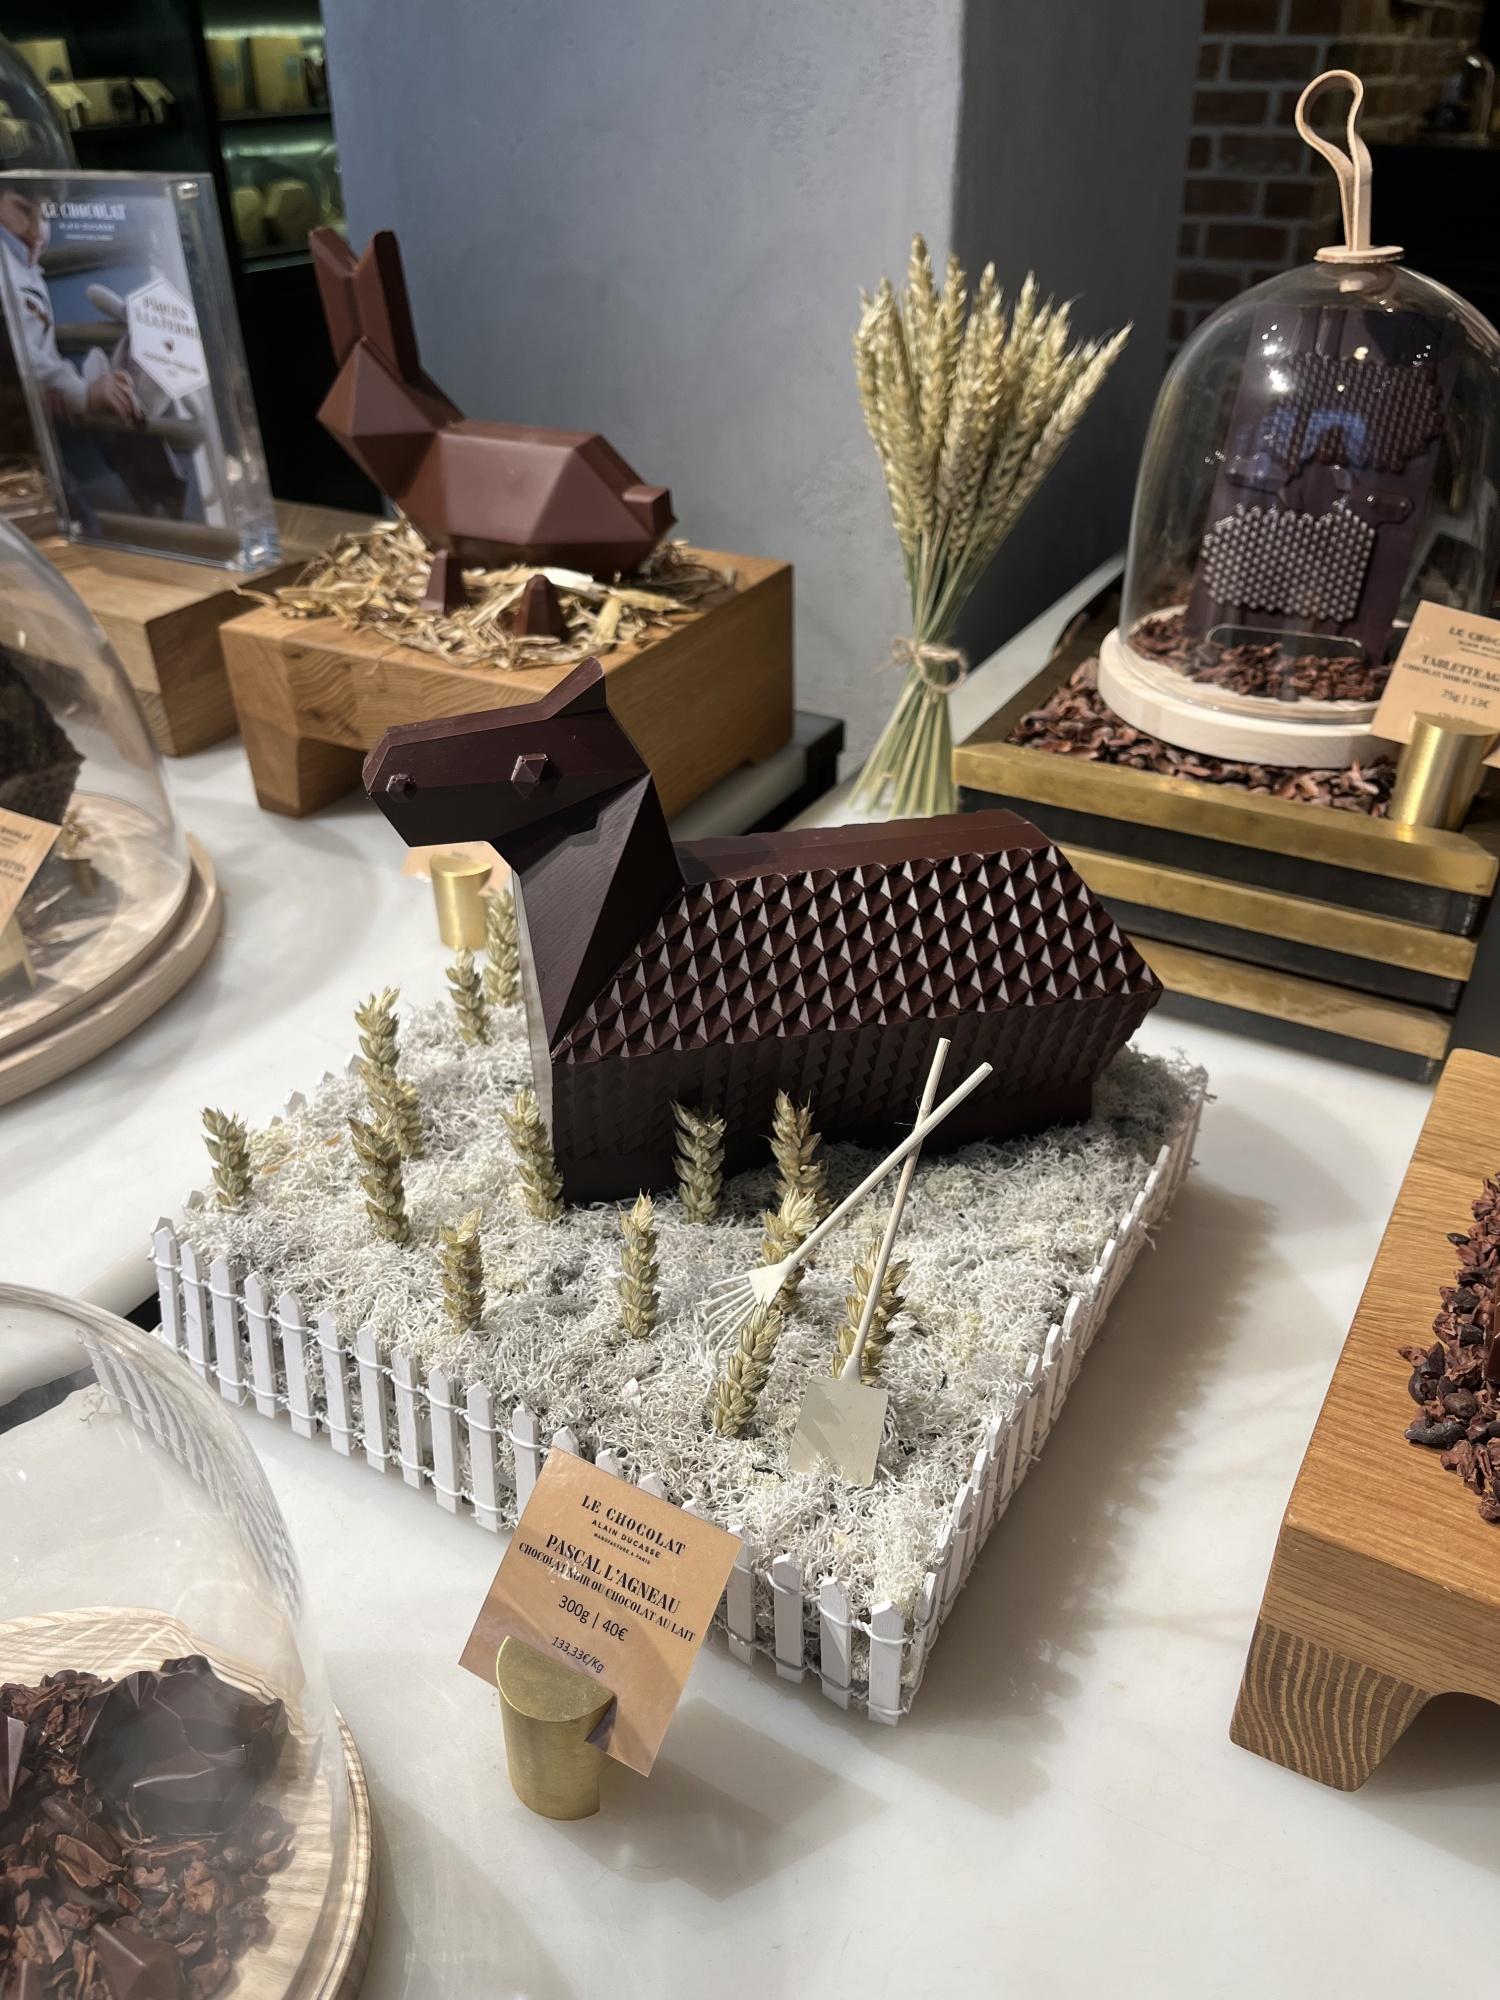 Le Chocolat Alain Ducasse, La Manufacture Des Grands Champs Paris